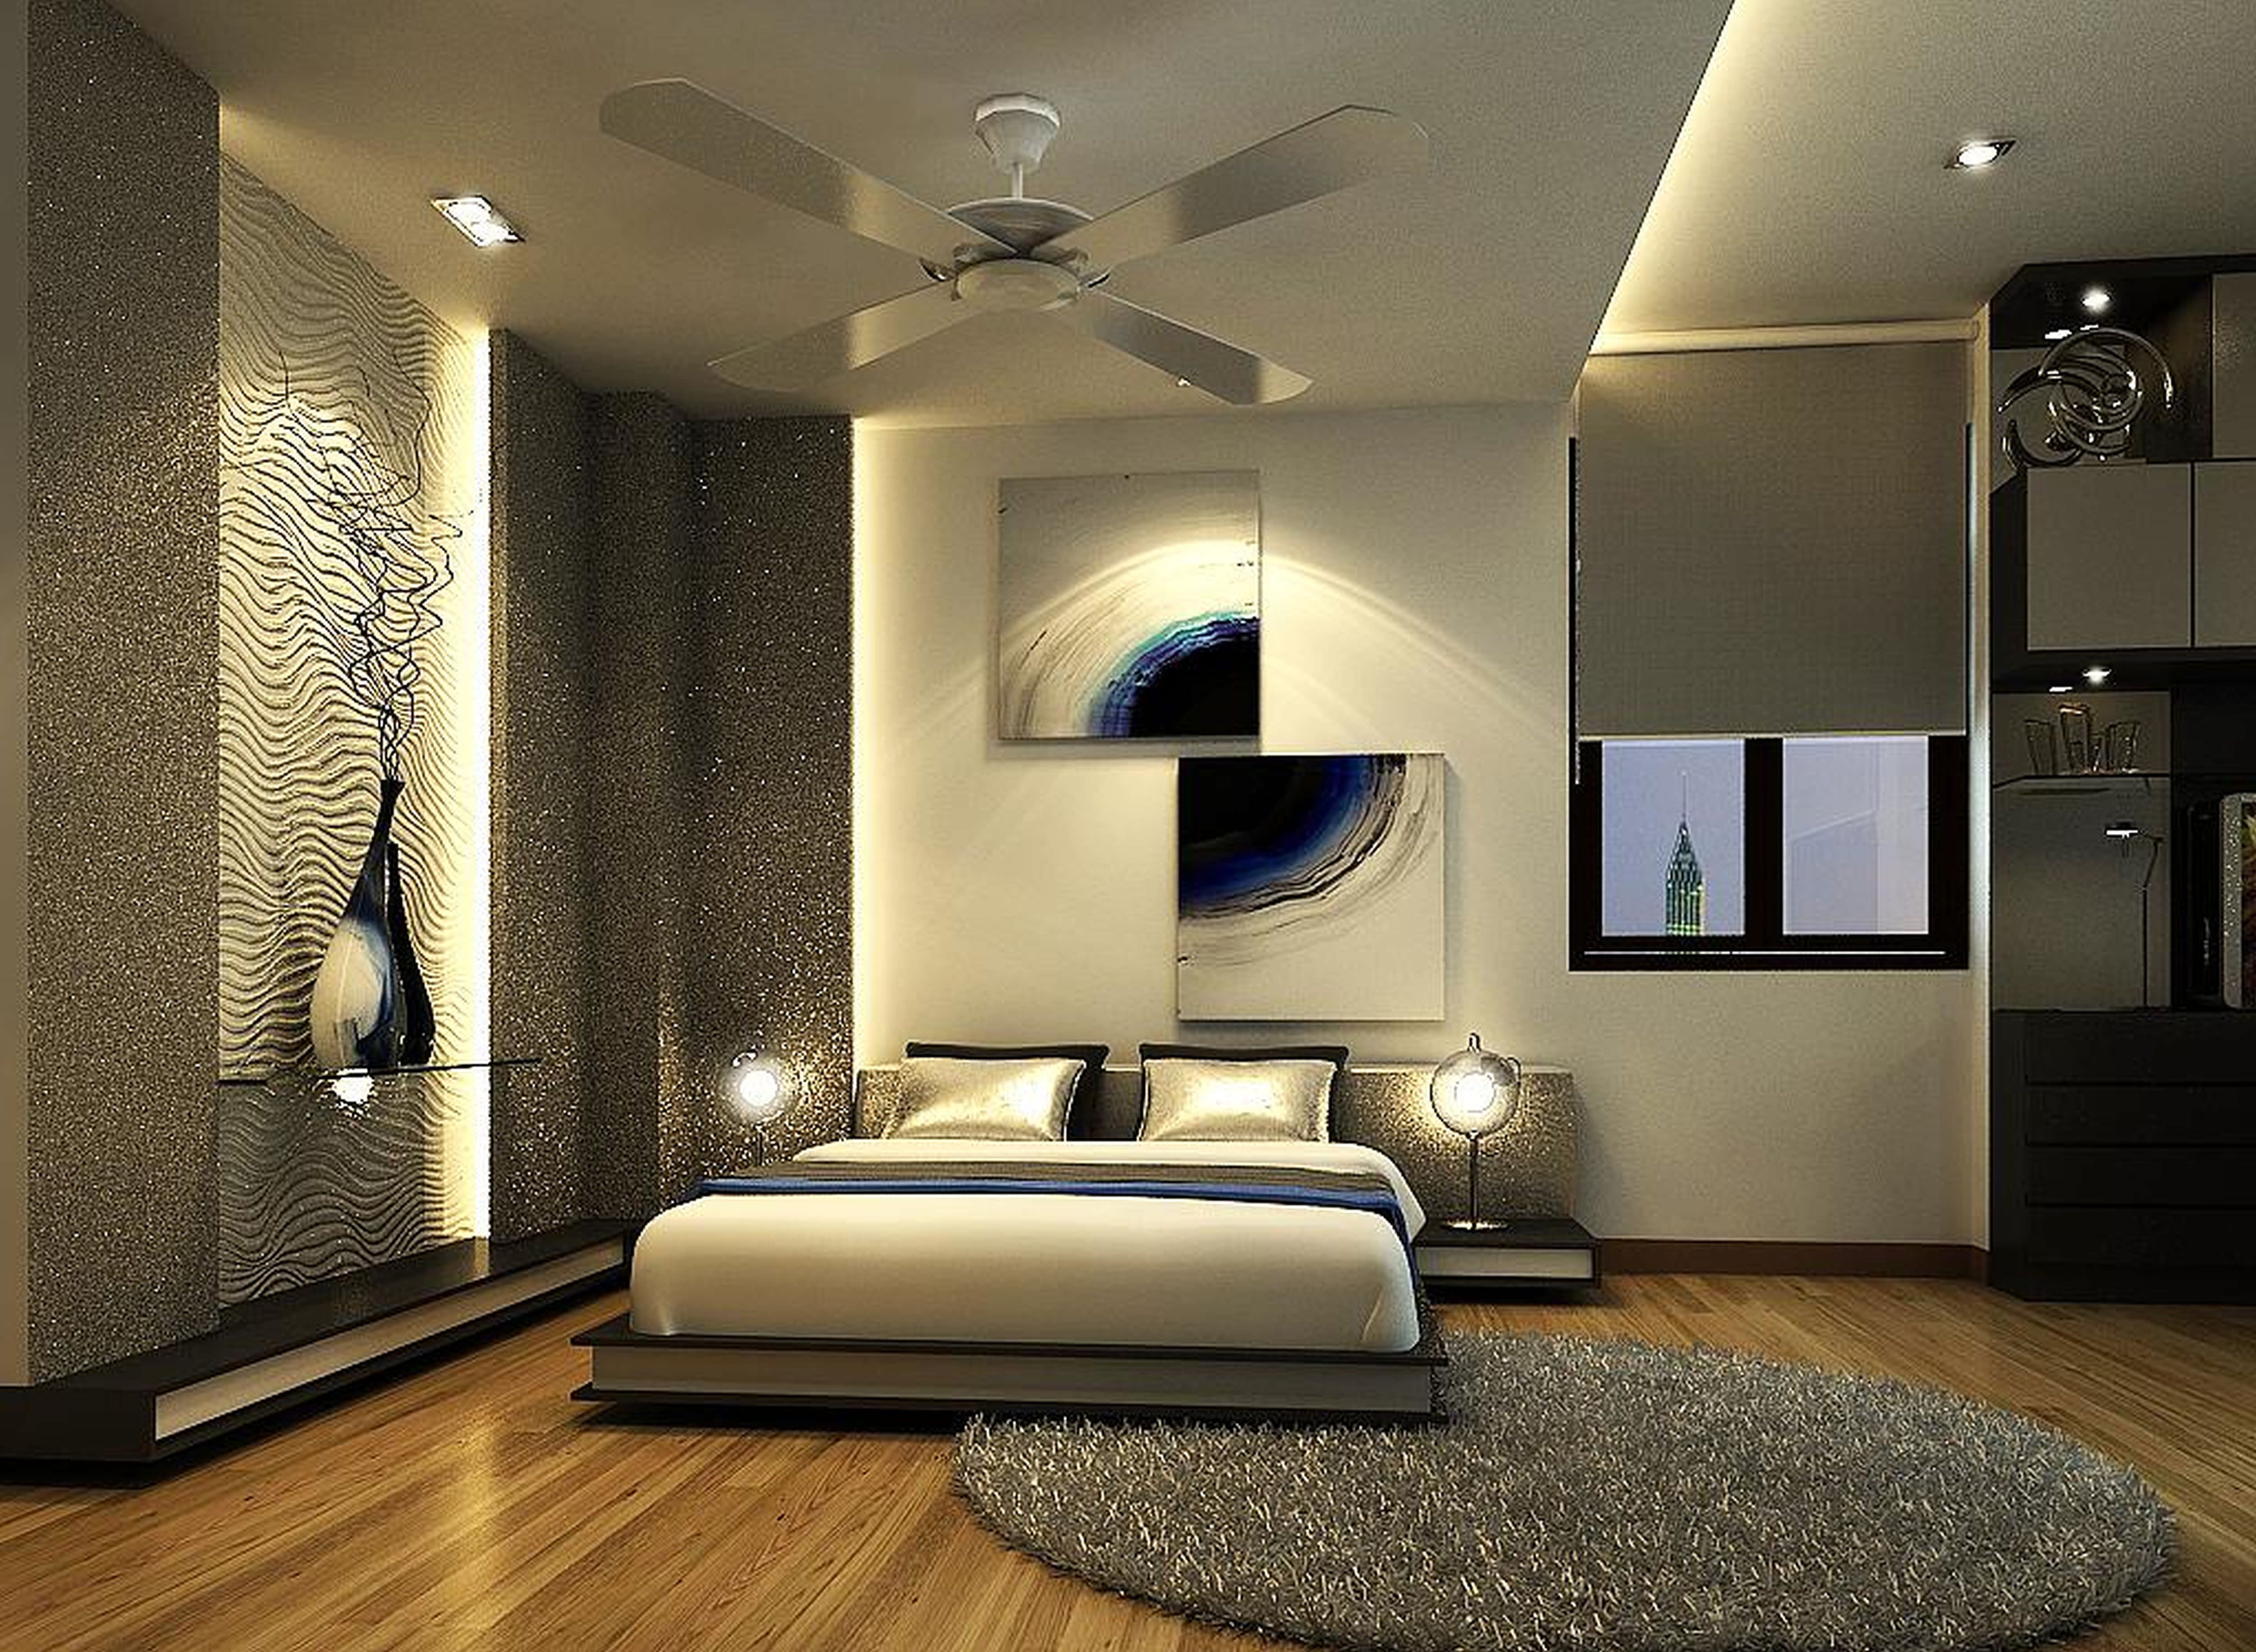 15+ Royal Bedroom Designs, Decorating Ideas | Design Trends - Premium ...